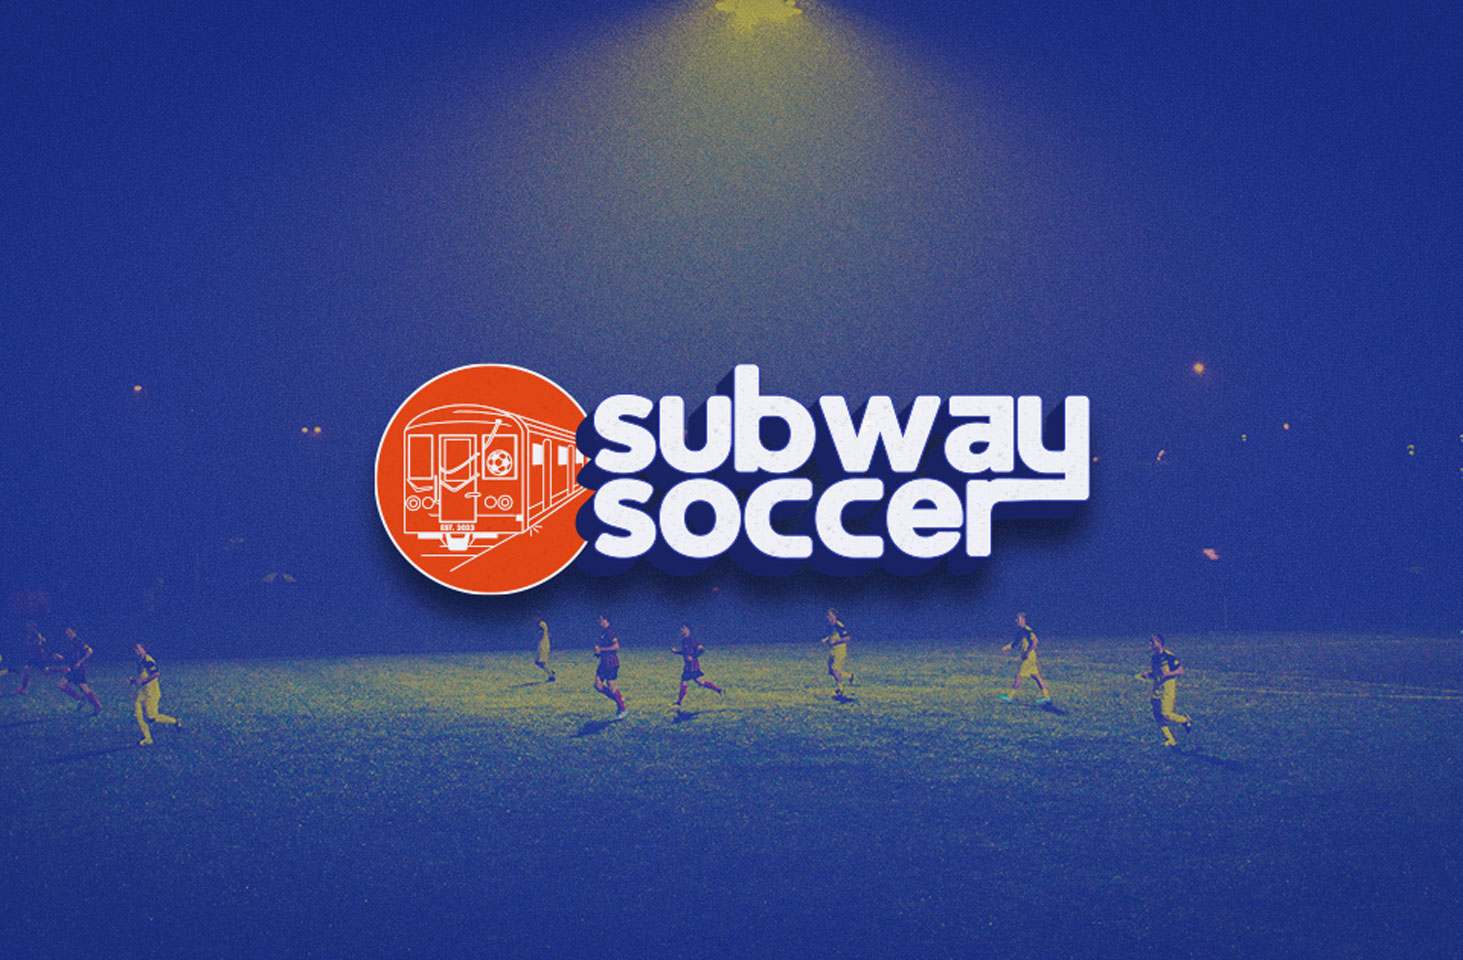 Subway Soccer